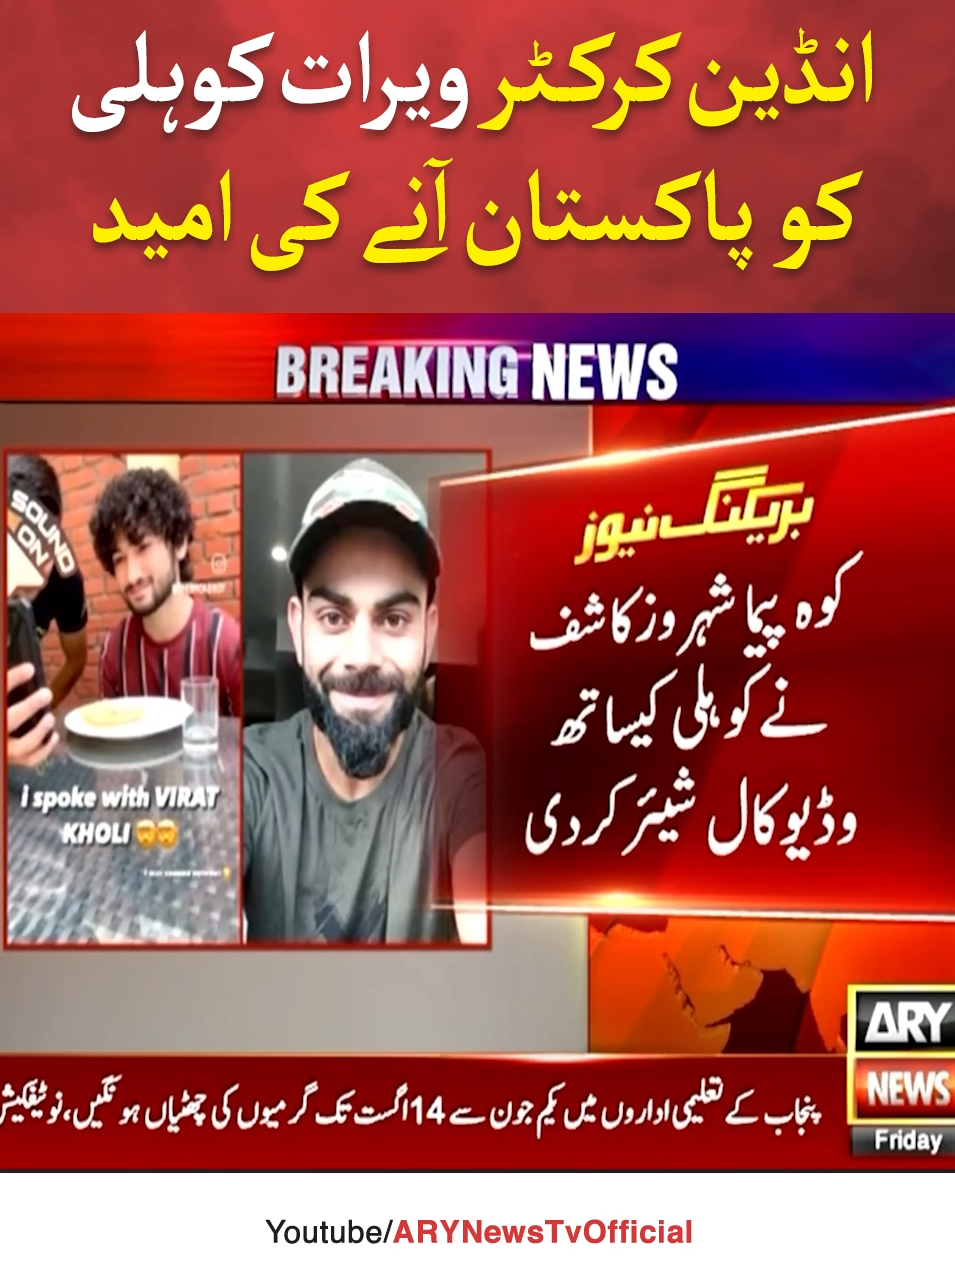 انڈین کرکٹر  ویرات کوہلی کو  پاکستان آنے کی امید #ARYNews